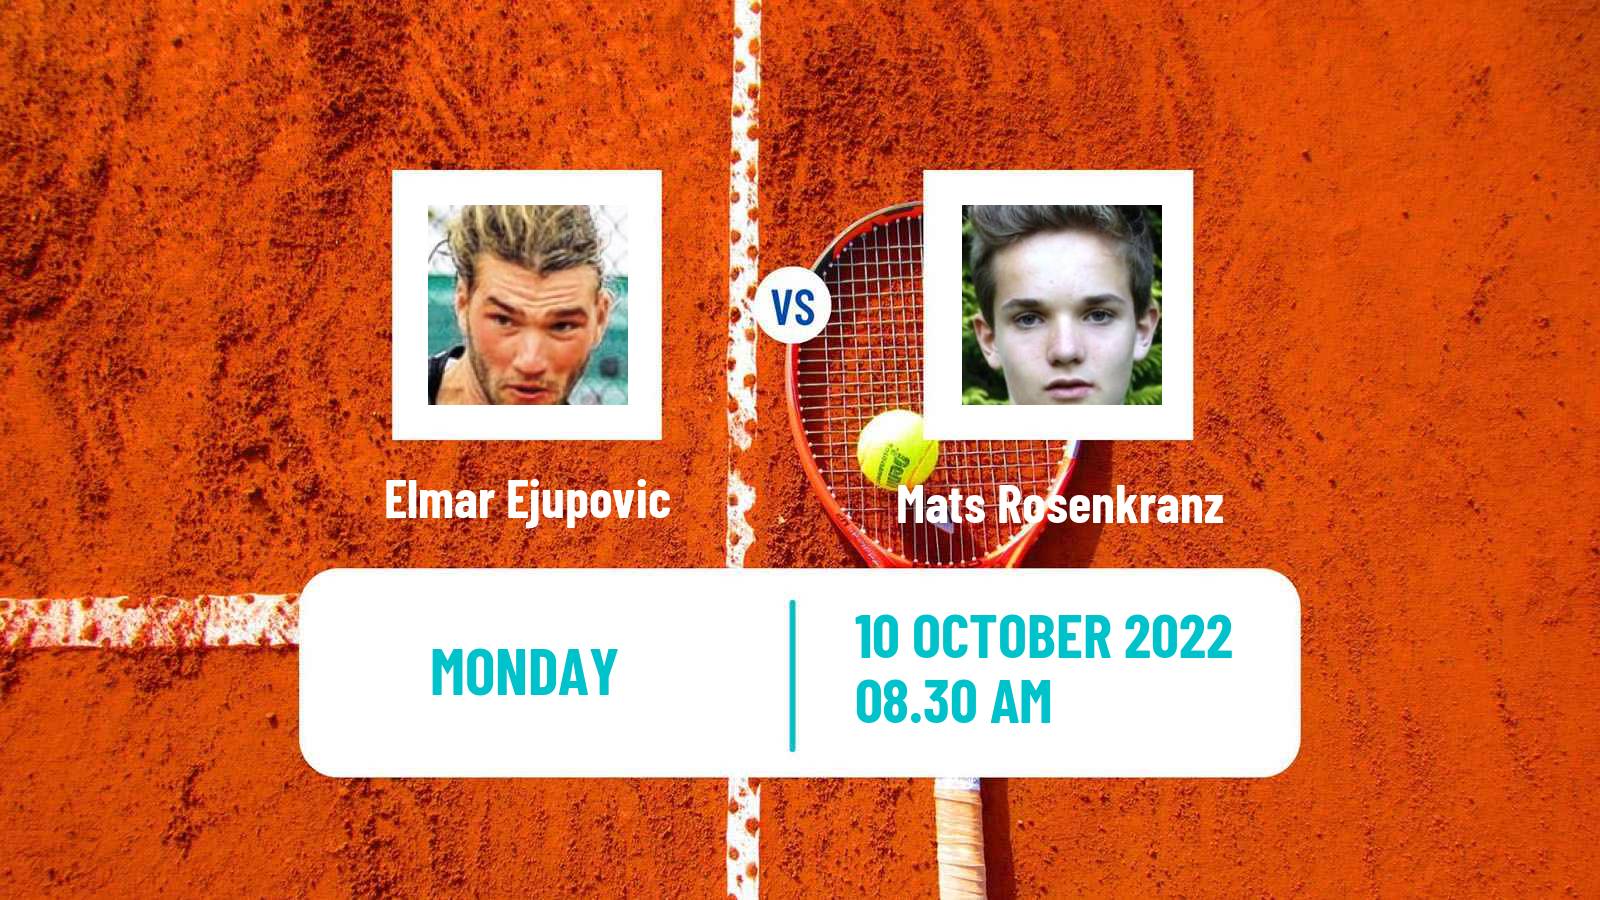 Tennis ATP Challenger Elmar Ejupovic - Mats Rosenkranz